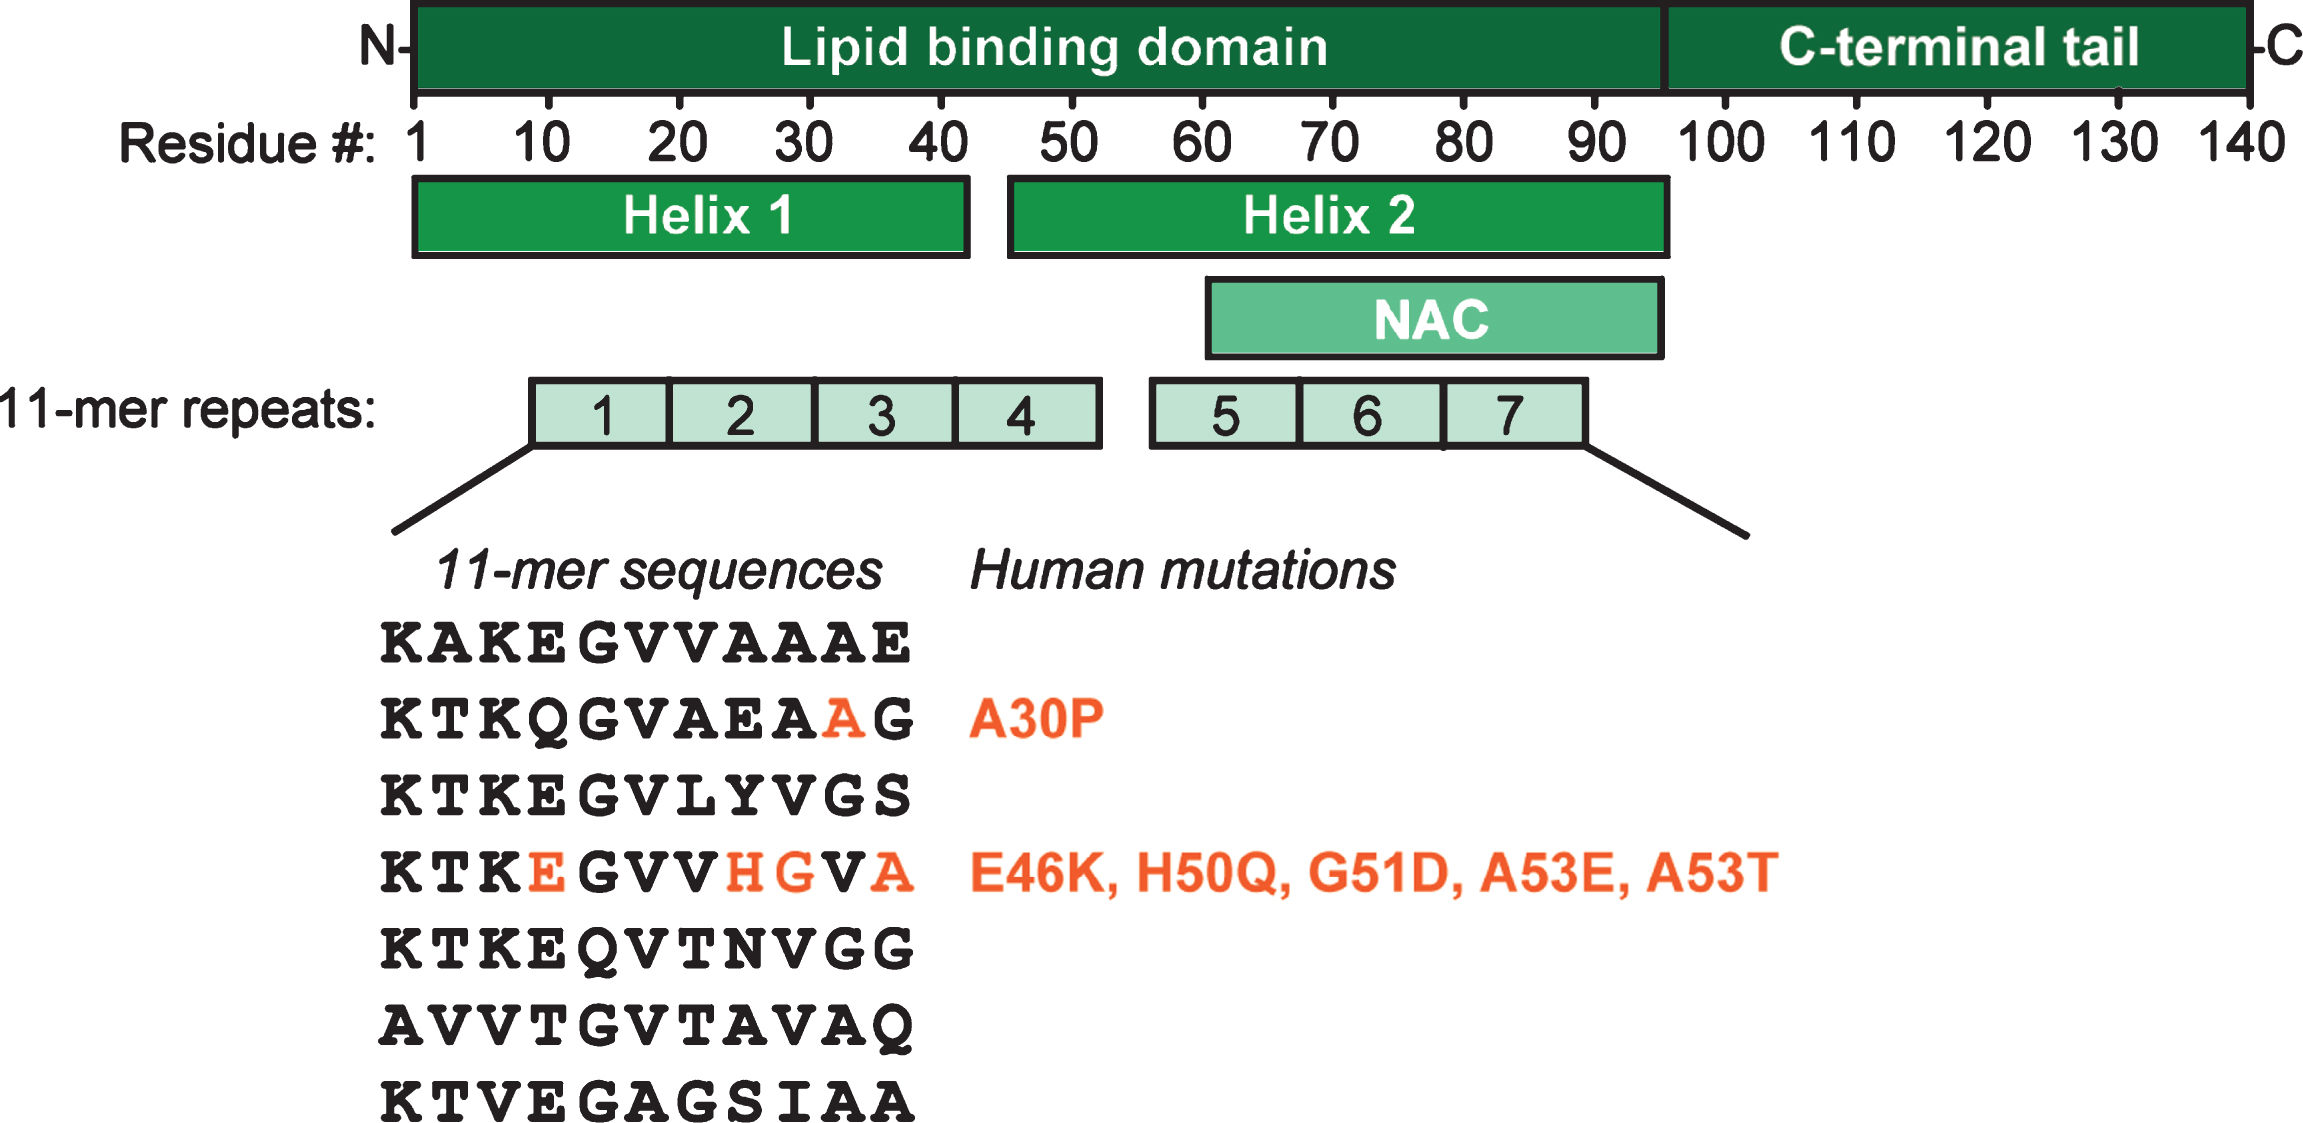 
α-Synuclein domain structure. Upon binding to lipid membranes, the N-terminal domain of α-synuclein folds into two amphipathic helices; the C-terminal tail of α-synuclein does not contribute to membrane binding. The lipid binding domain can be divided into seven highly conserved 11-mer sequences. Helix 2 contains the aggregation-prone NAC-domain. All disease-linked mutations of α-synuclein are located in the second and fourth 11-mer stretch.